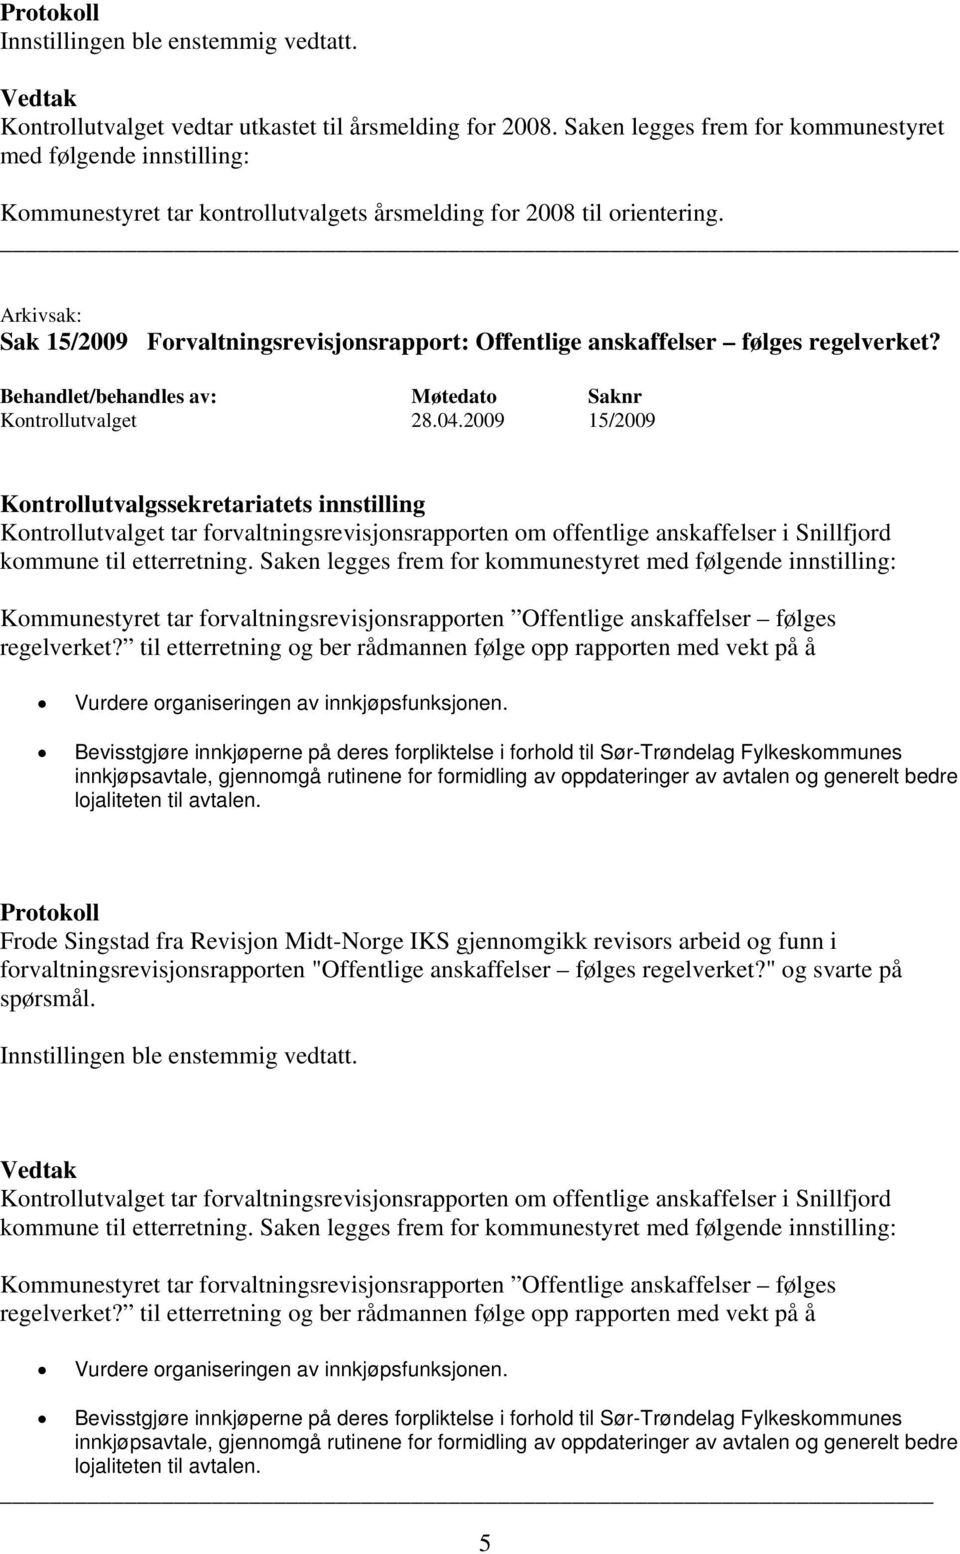 2009 15/2009 Kontrollutvalget tar forvaltningsrevisjonsrapporten om offentlige anskaffelser i Snillfjord kommune til etterretning.